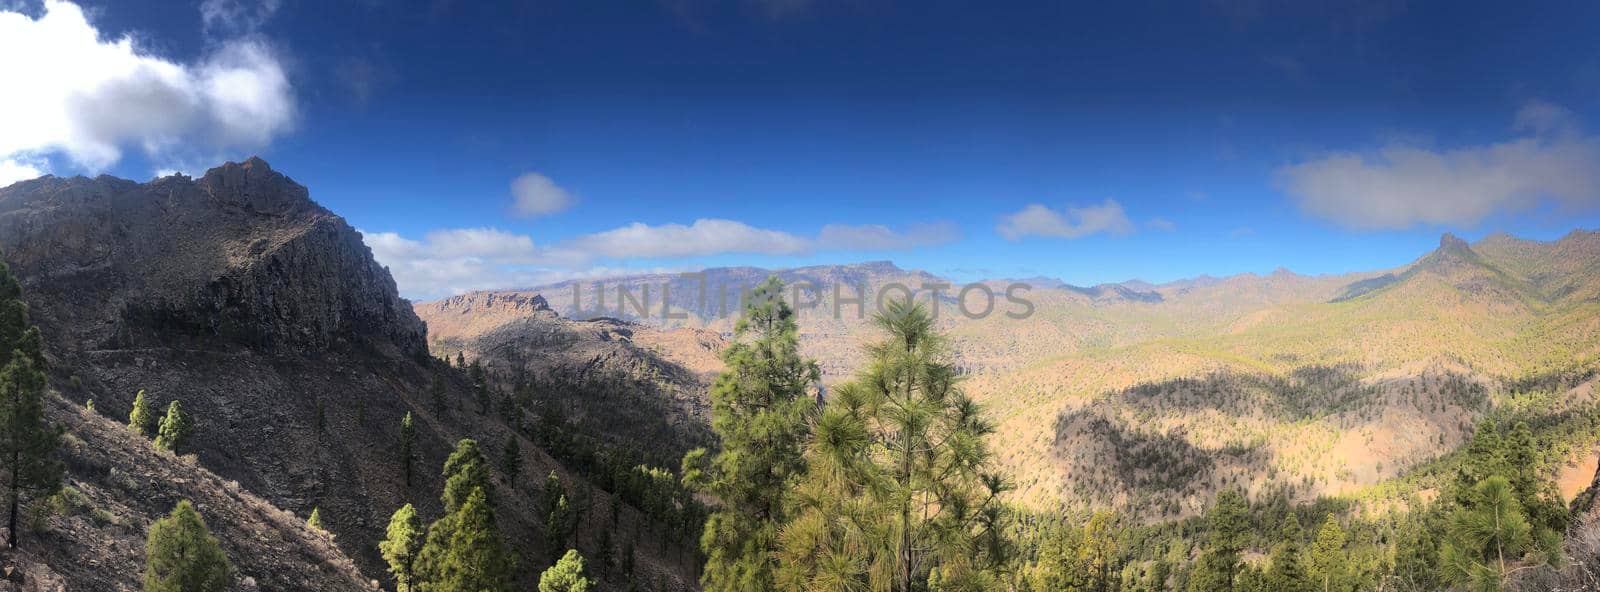 Panoramic scenery on Gran Canaria